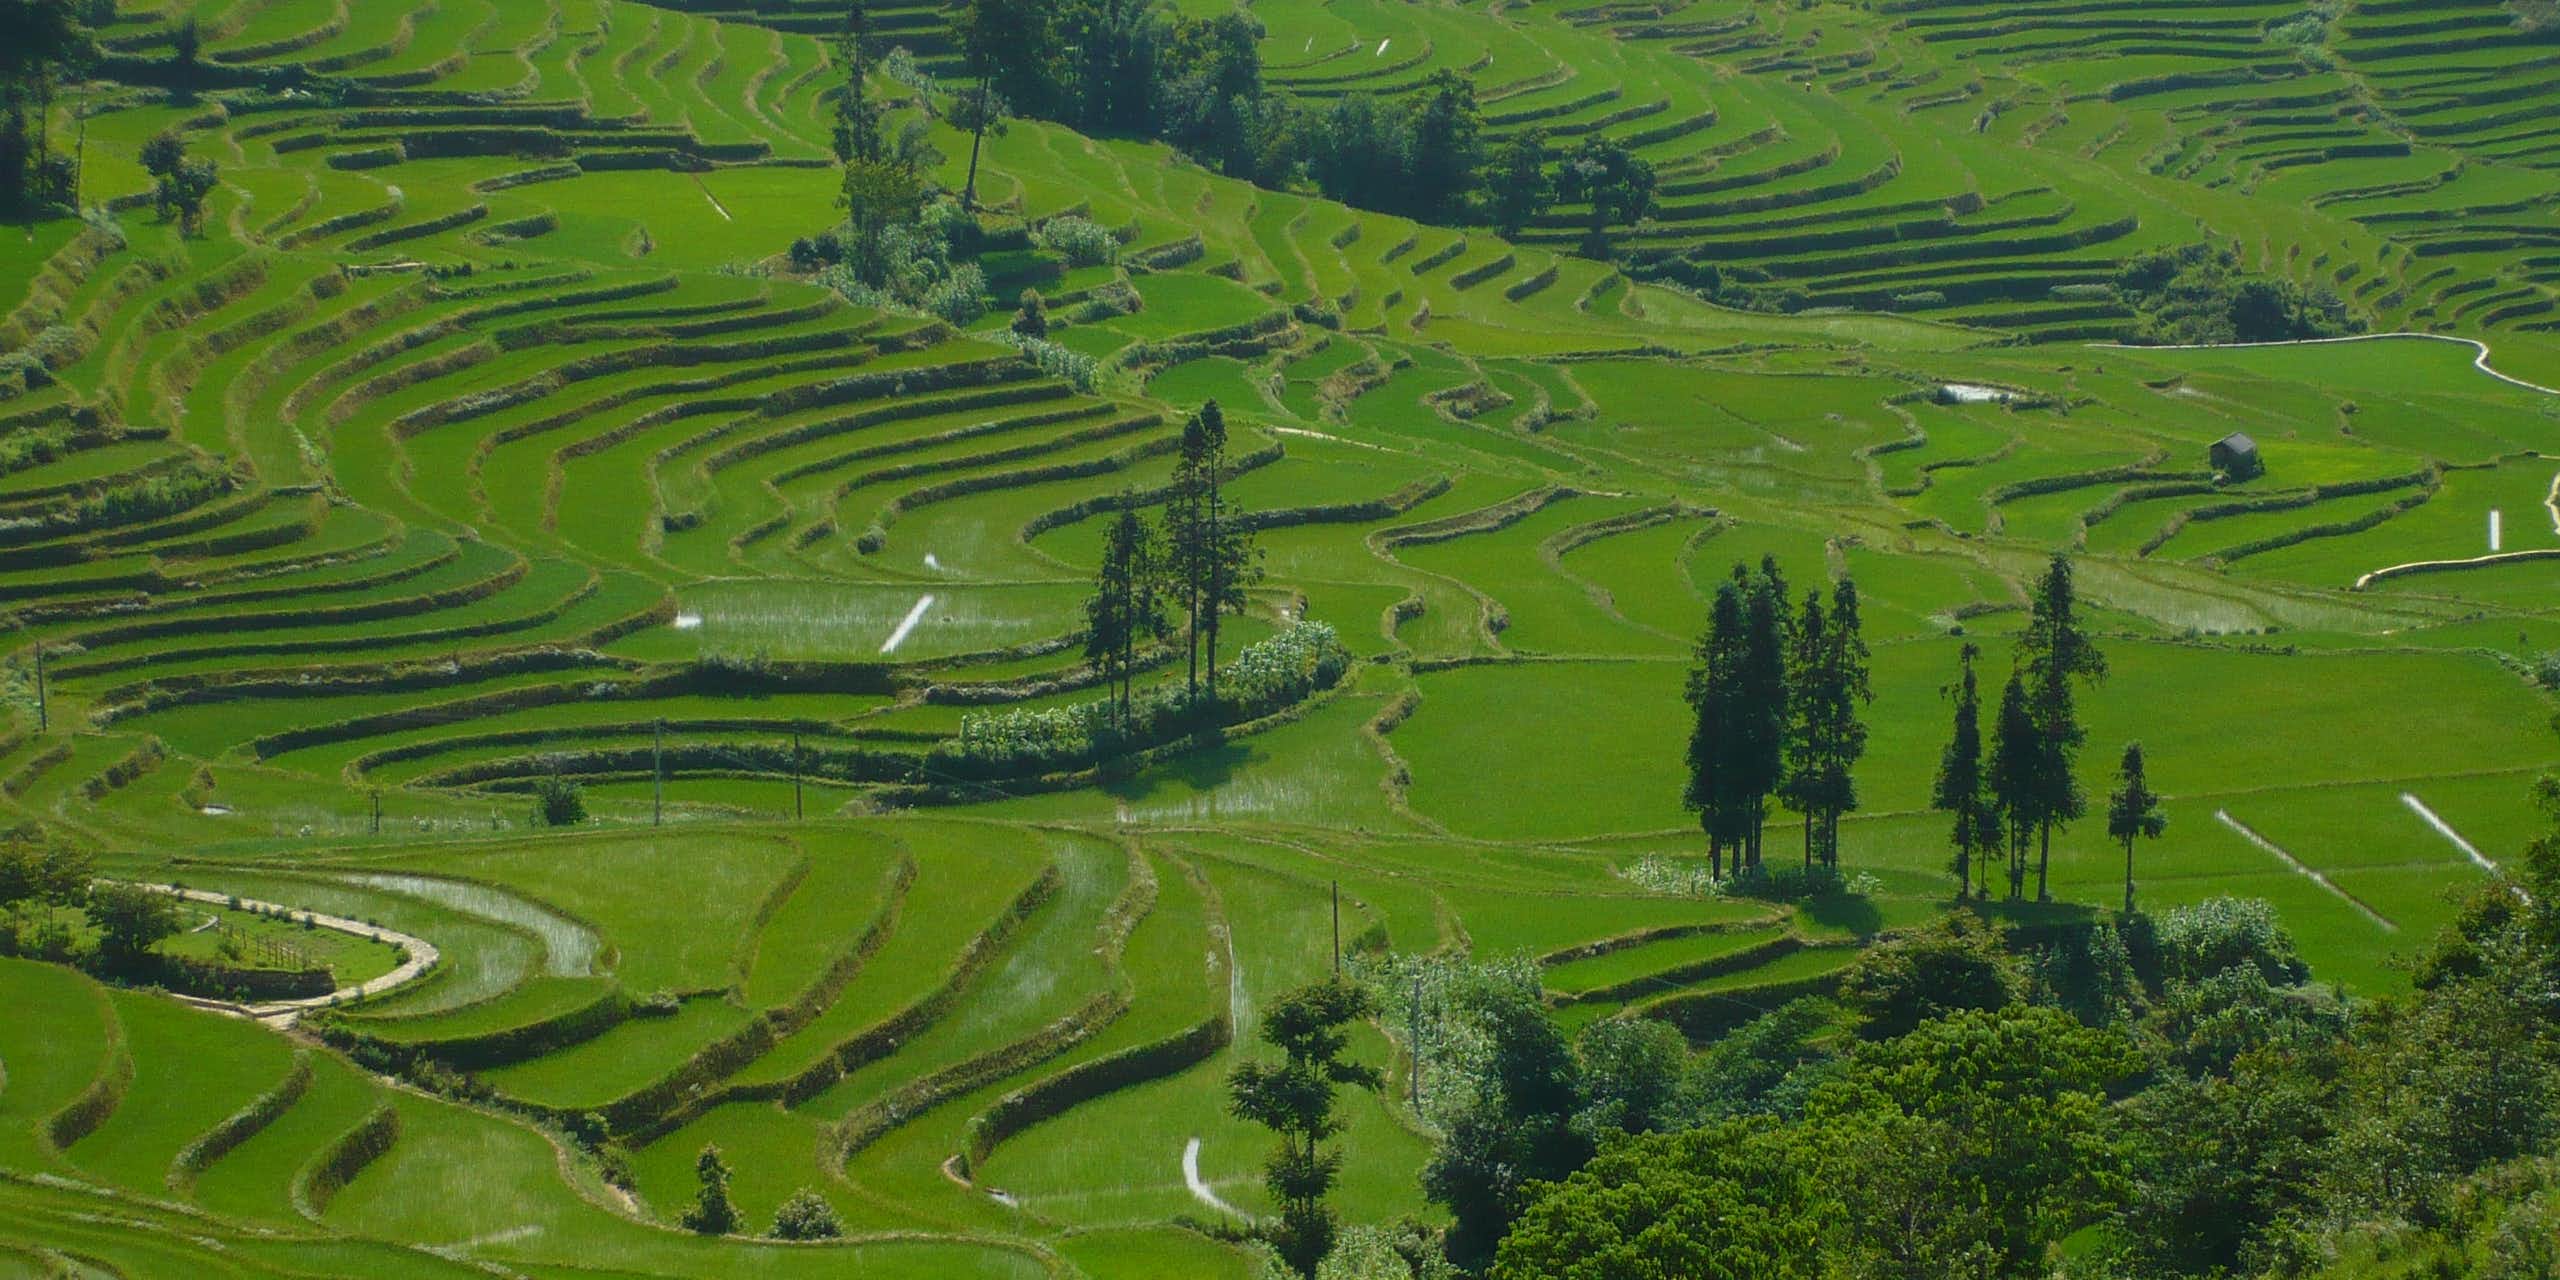 Les terrasses rizicoles du Yuanyang, au Yunnan (Chine) dont la diversité cultivée a inspiré l'équipe de recherche pour lancer des recherches sur les effets bénéfiques de la diversité cultivée.